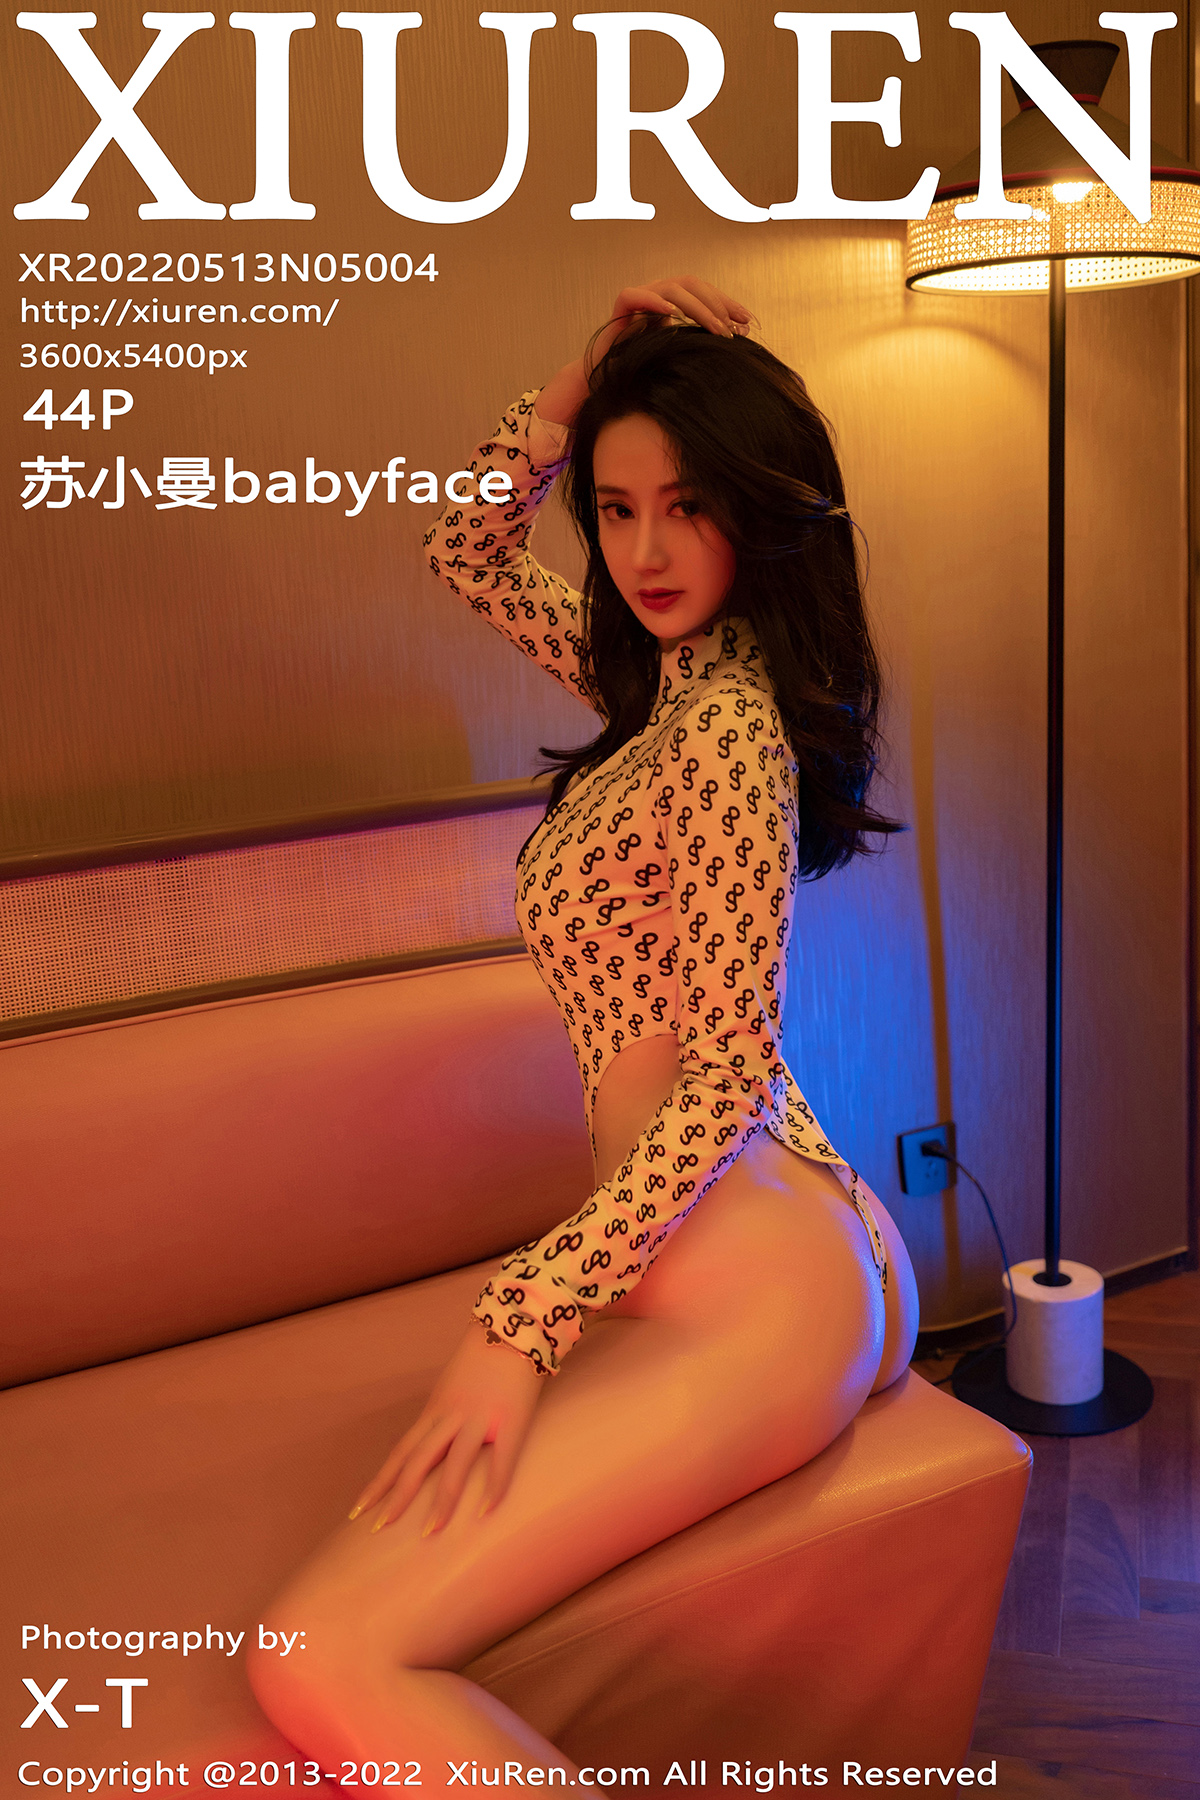 【XiuRen秀人網】2022.05.13 Vol.5004 蘇小曼babyface 完整版無水印寫真【44P】 - 貼圖 - 清涼寫真 -